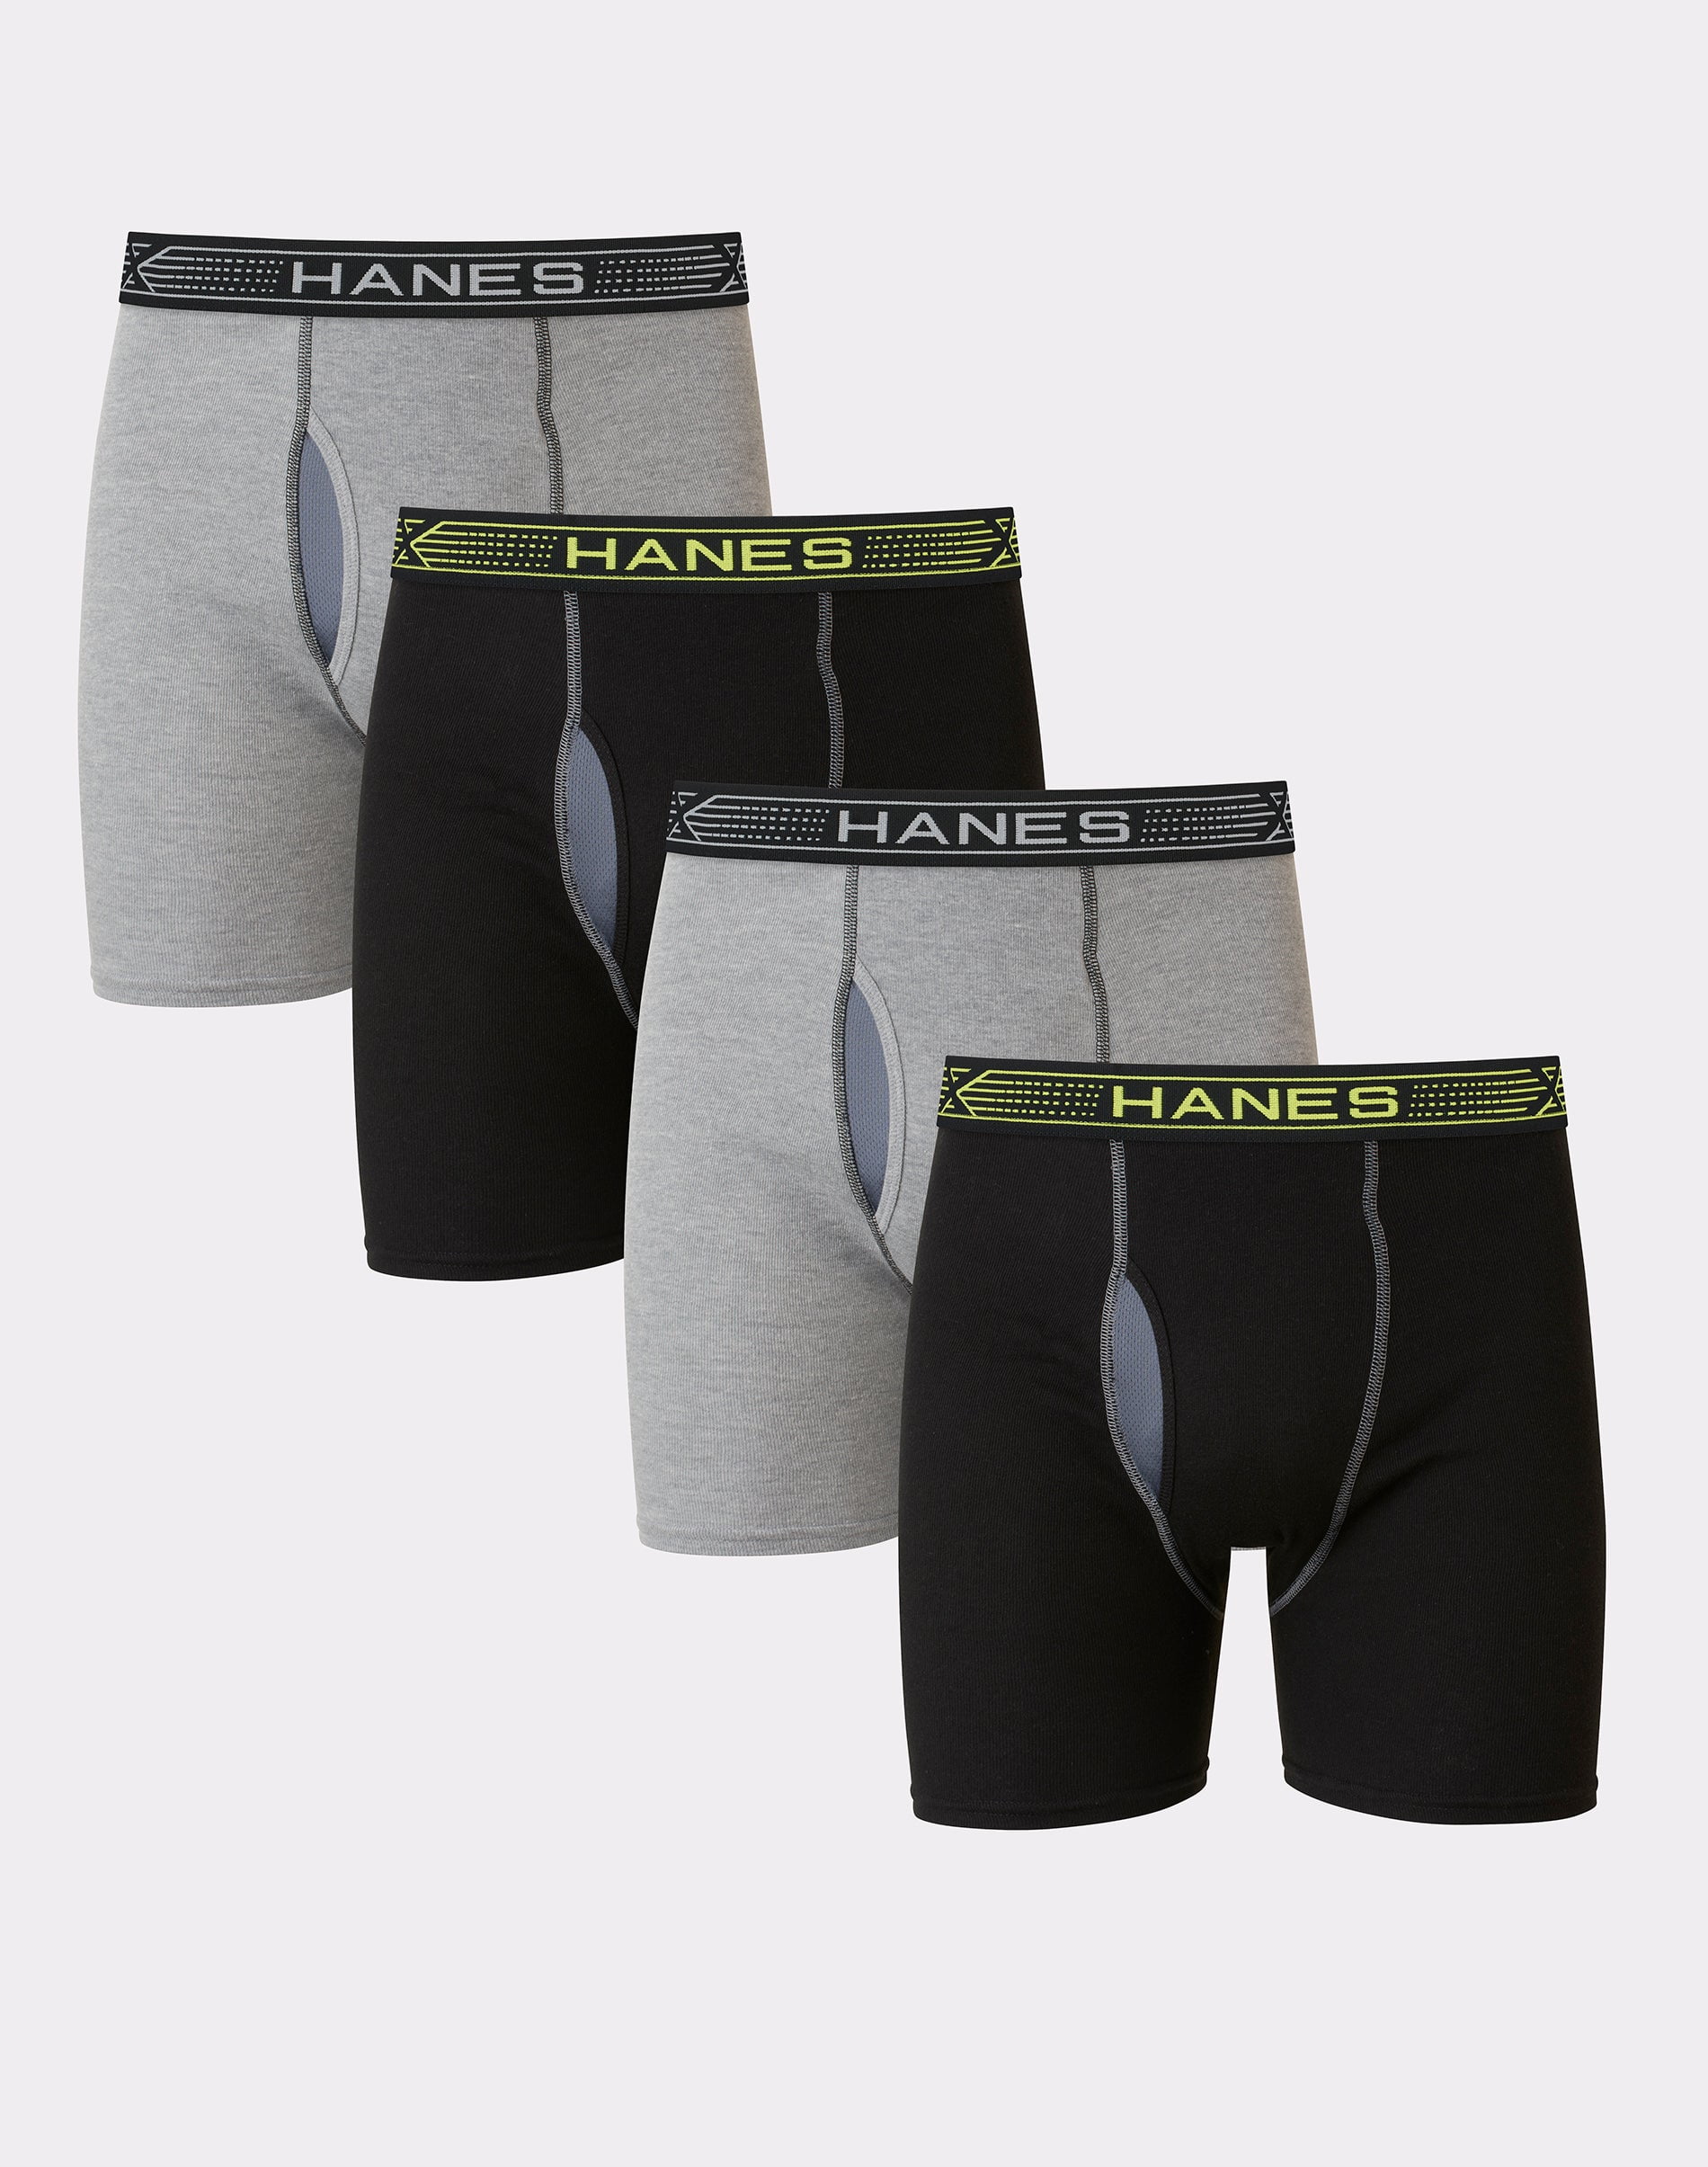 Hanes Sport X-Temp Men’s Cotton Boxer Brief Underwear, Black/Grey, 4-Pack S